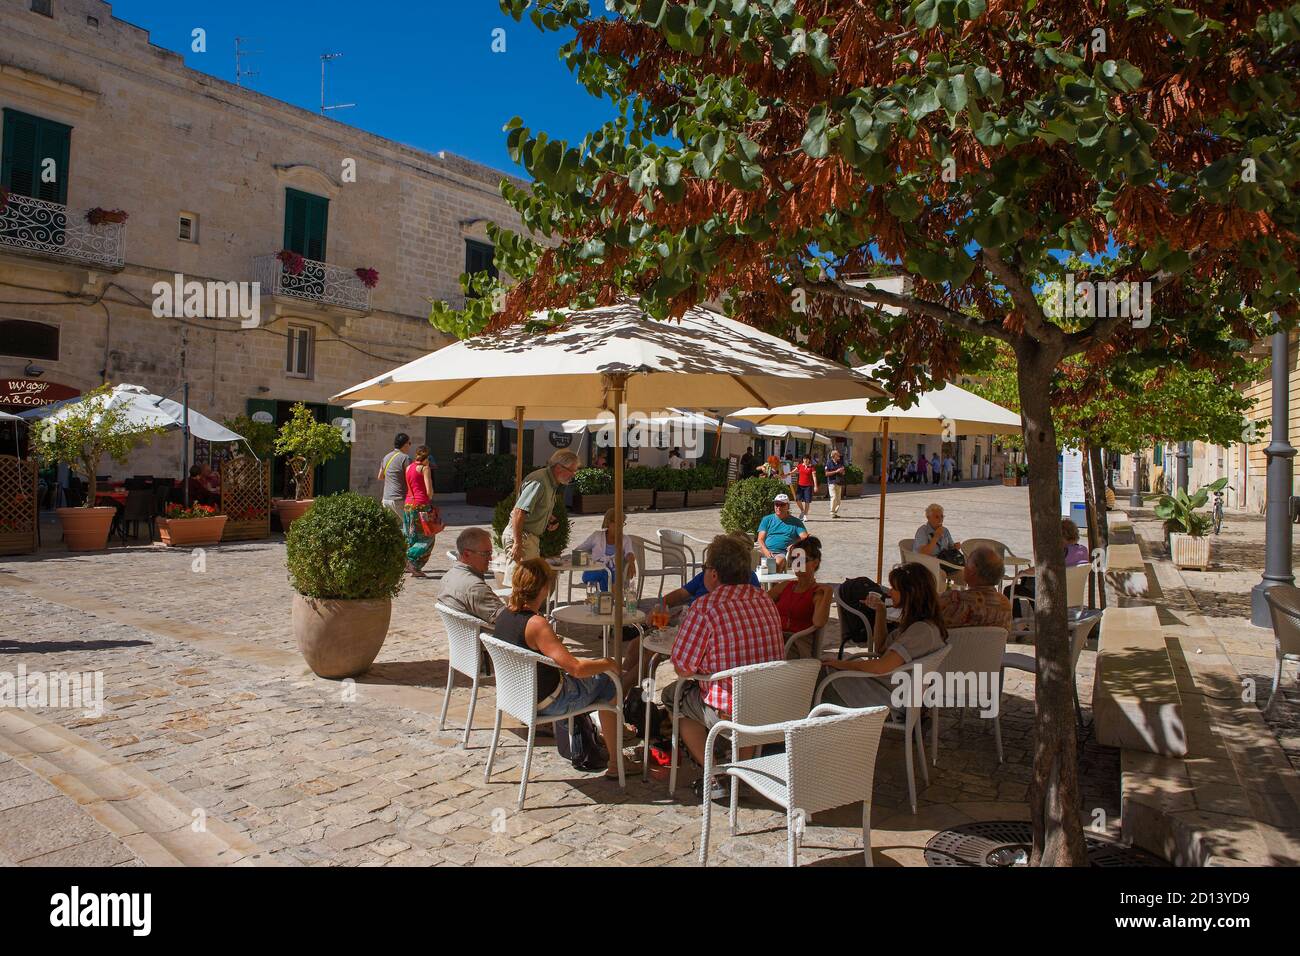 Cafe Society, via Domenico Ridola, Matera, Basilicate, Italie: Groupes de personnes assis à l'ombre pour un verre à l'heure du déjeuner Banque D'Images